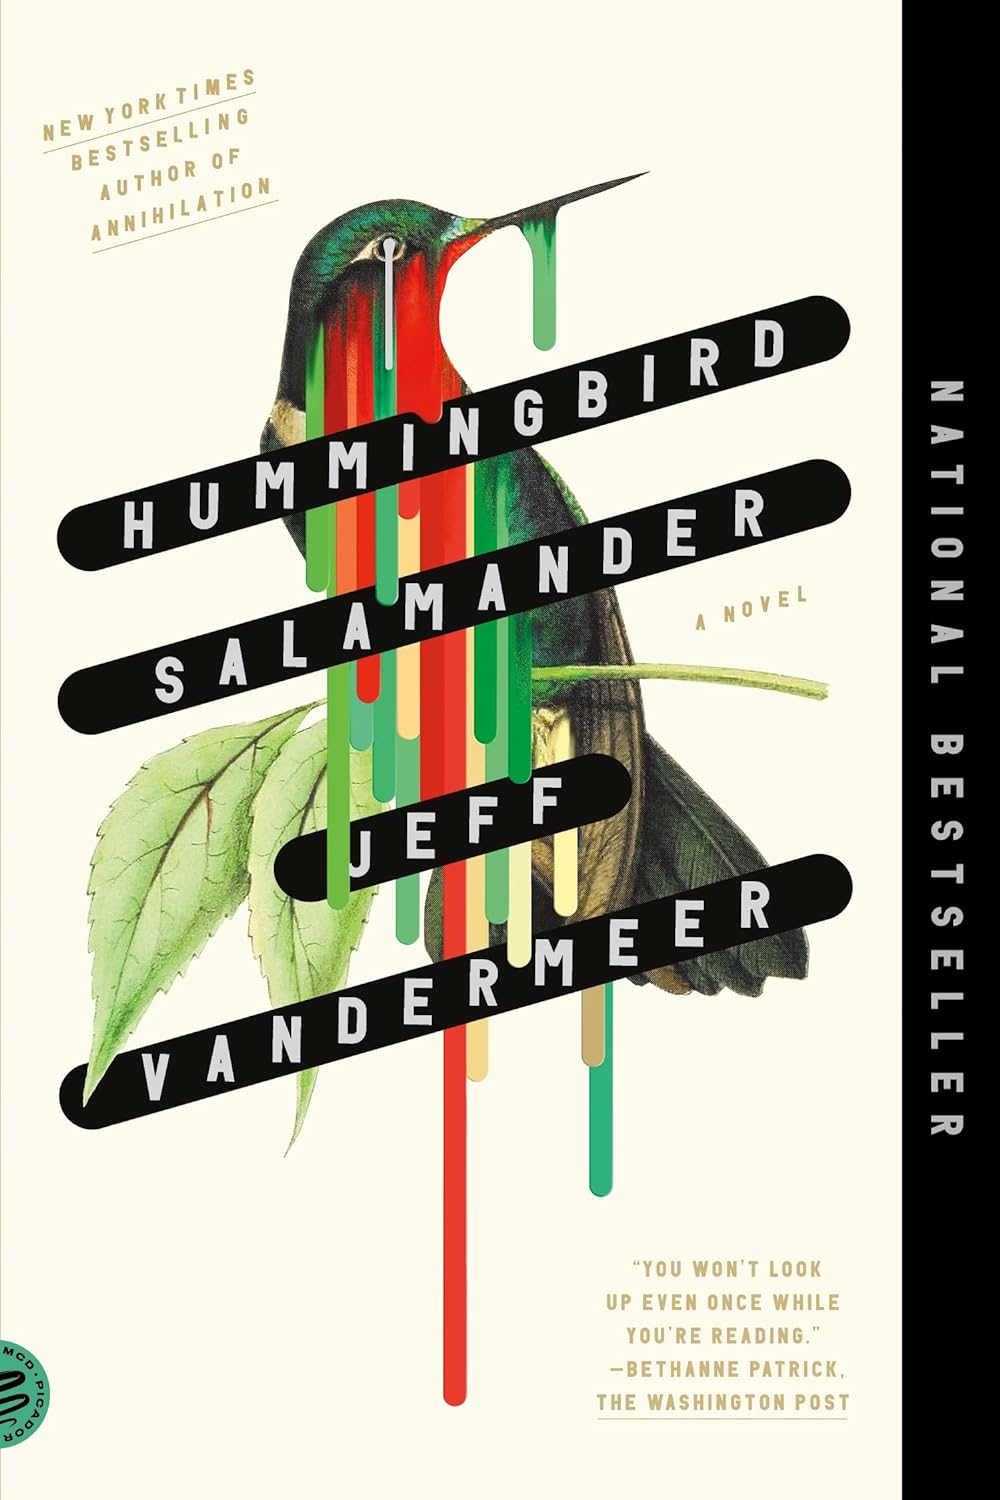 Image of book cover Hummingbird Salamander